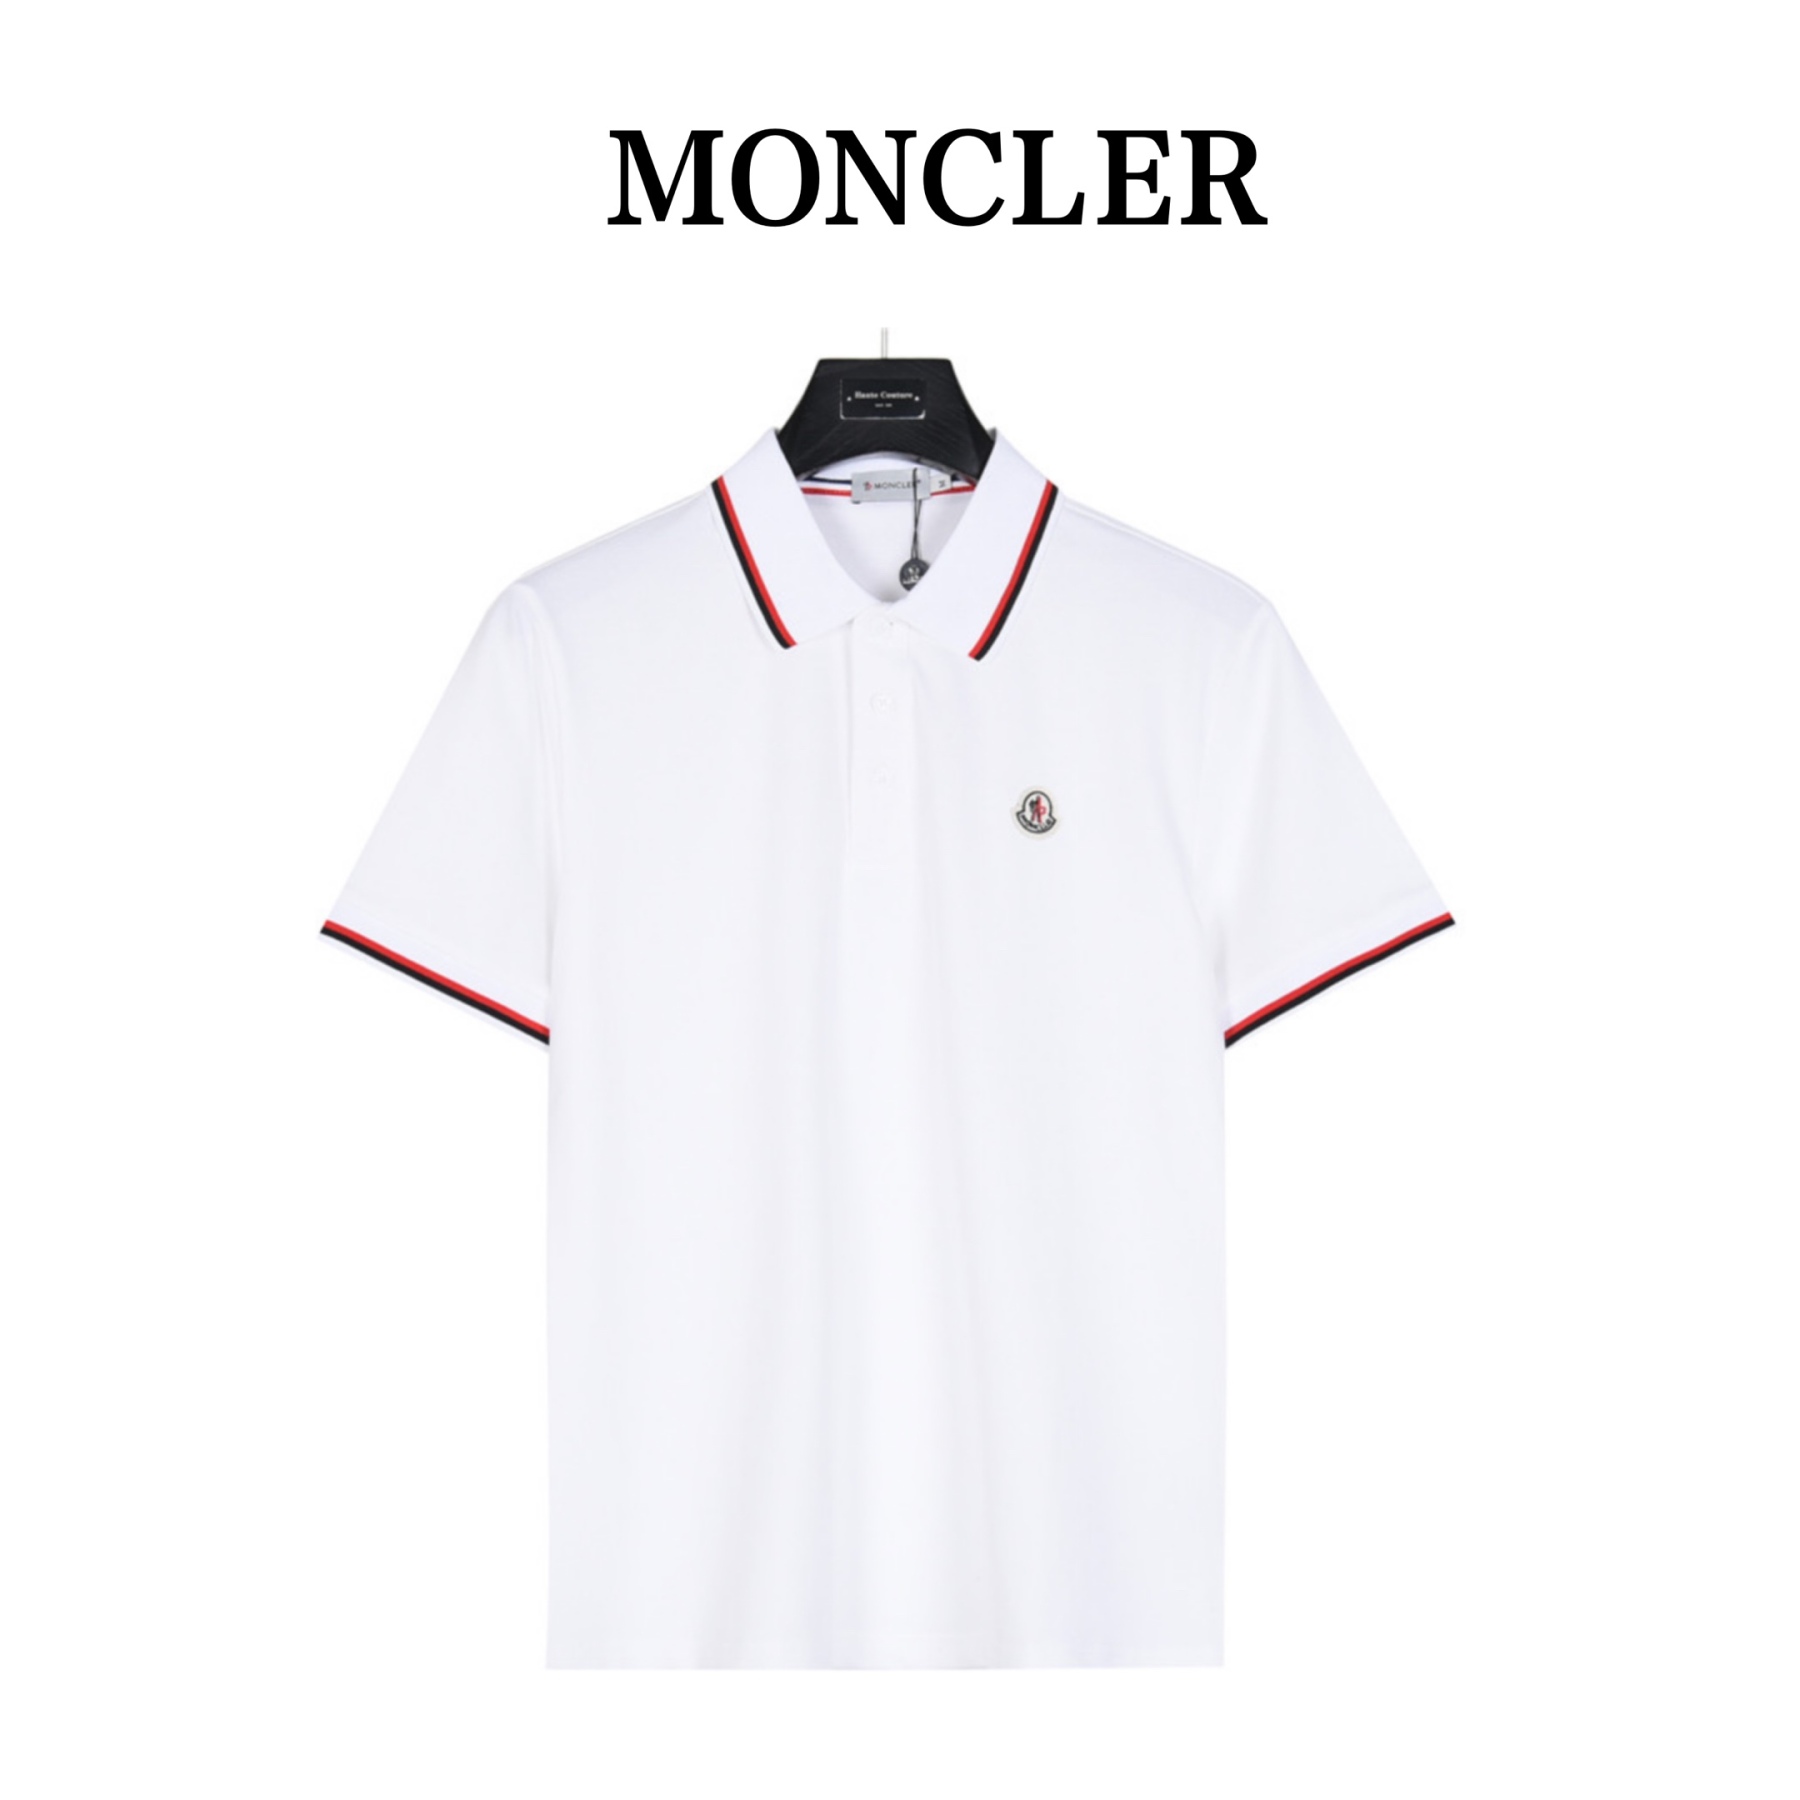 そこで、財蒙免税店1周年を記念して、最も売れているMONCLER モンクレールメンズポロシャツを1枚あたり47980円のオリジナル価格で、特別価格11980で販売させていただきます。